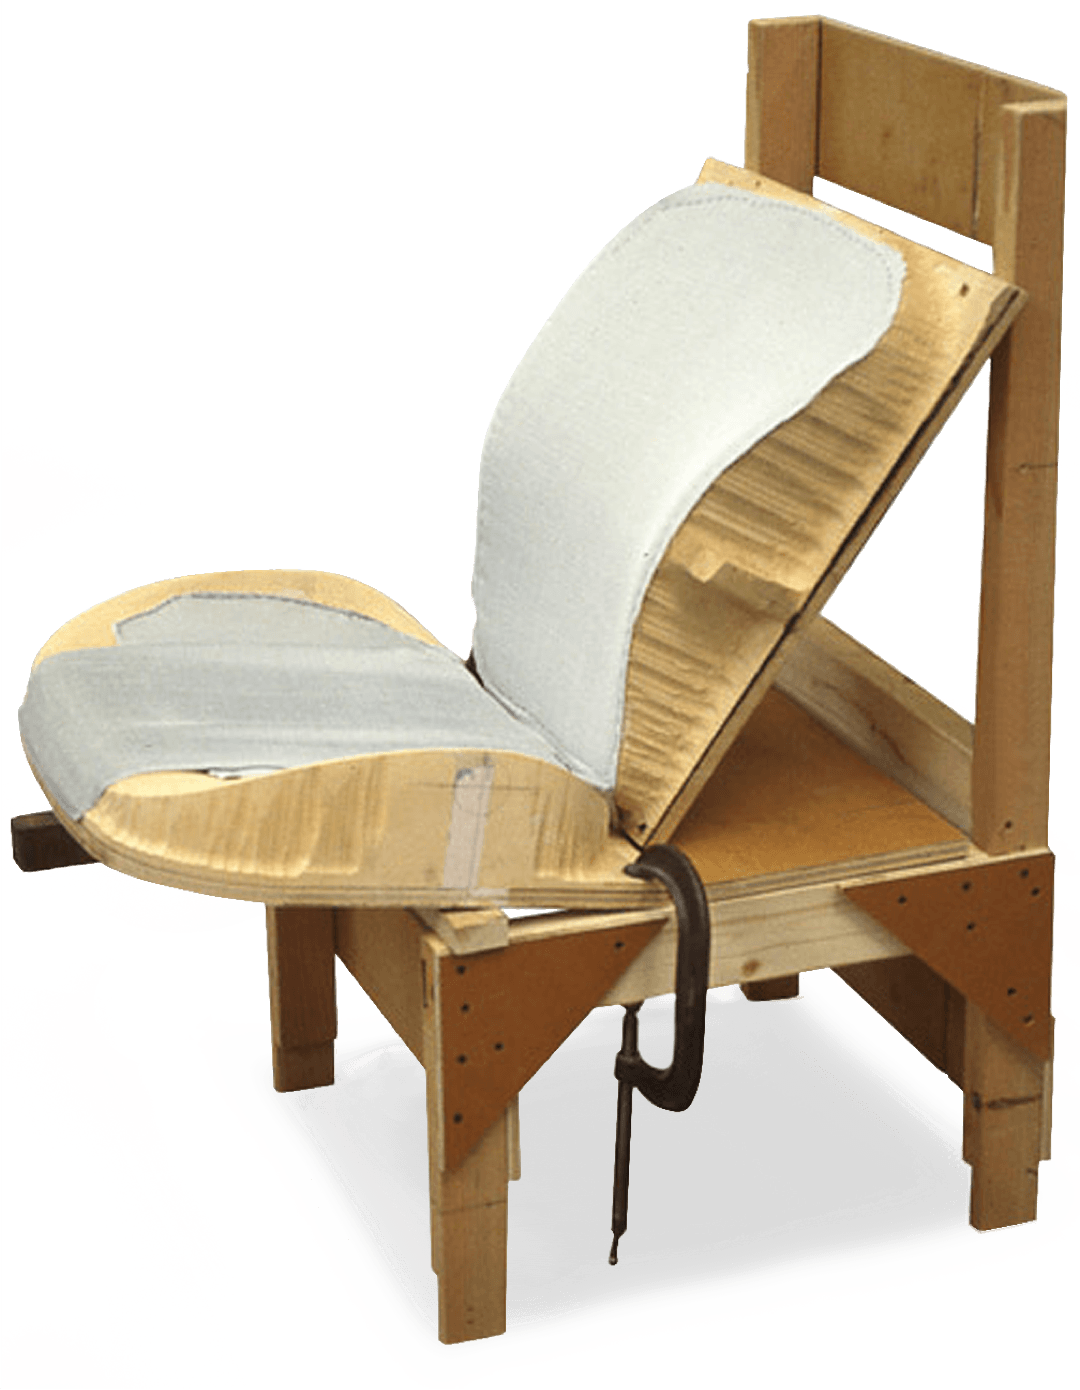 Wooden ergonomic seating prototype